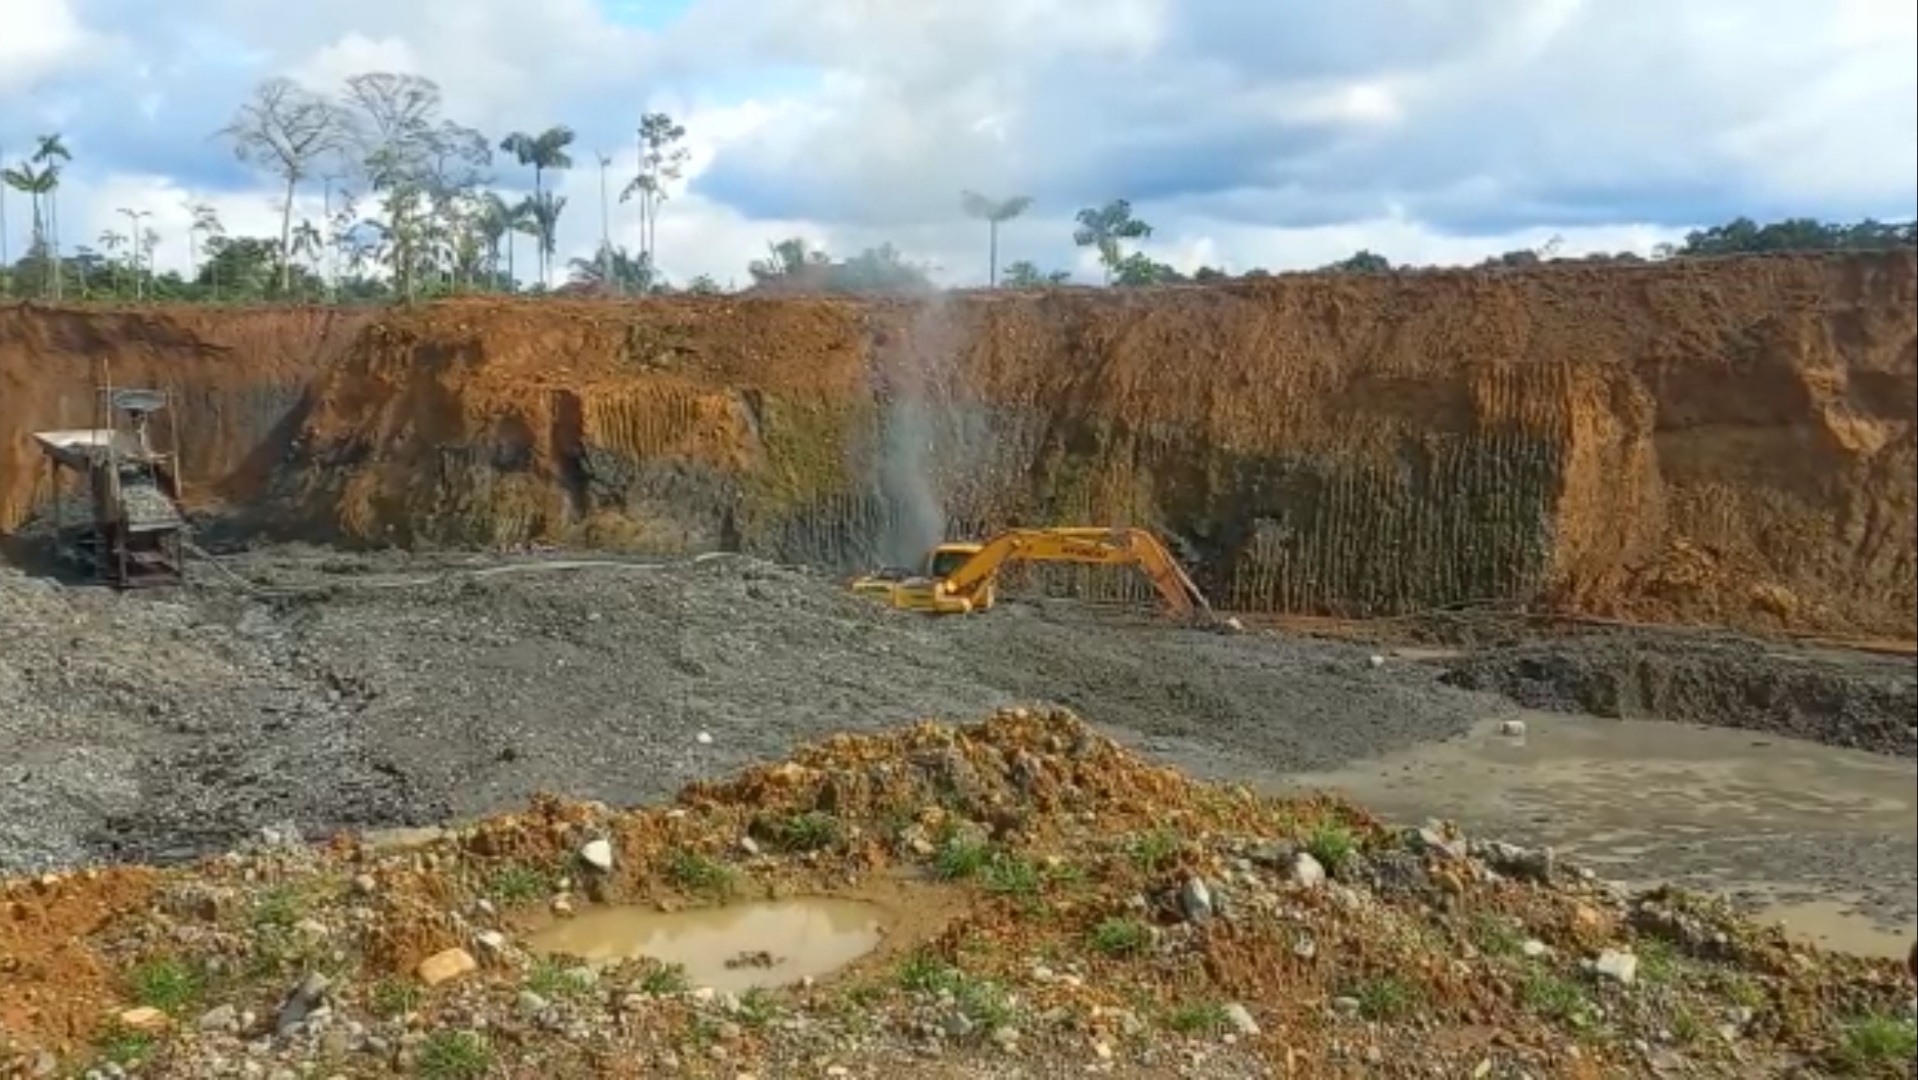 Operación contra minería ilegal, permite recuperar 30 hectáreas de bosques chocoanos.